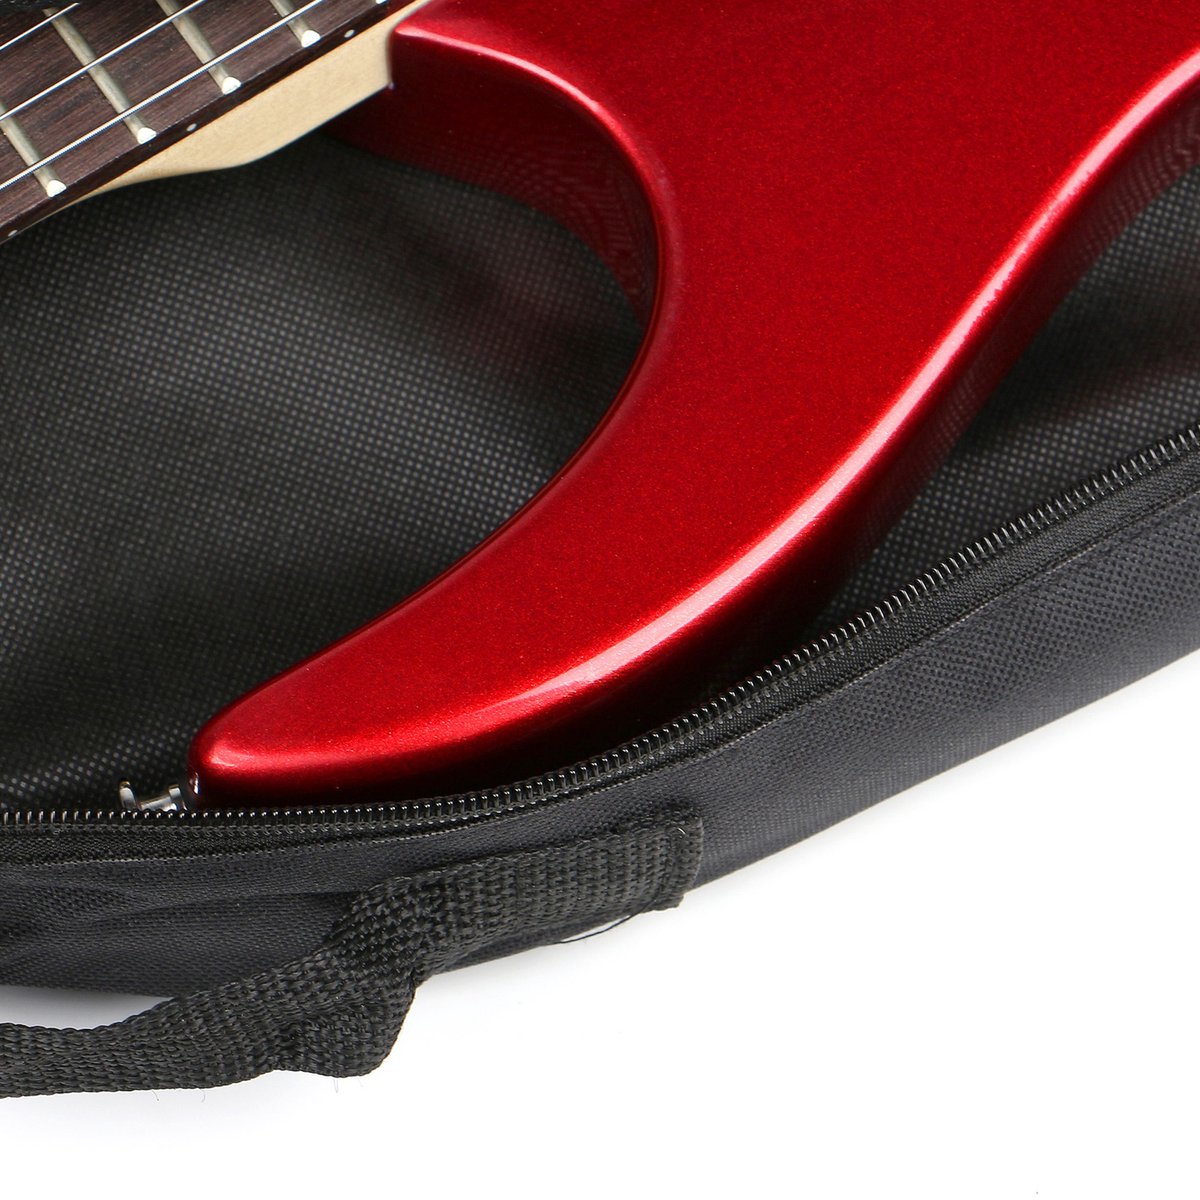 Fender FE 620 Electric Guitar Gig Bag, Black « Housse guitare électrique